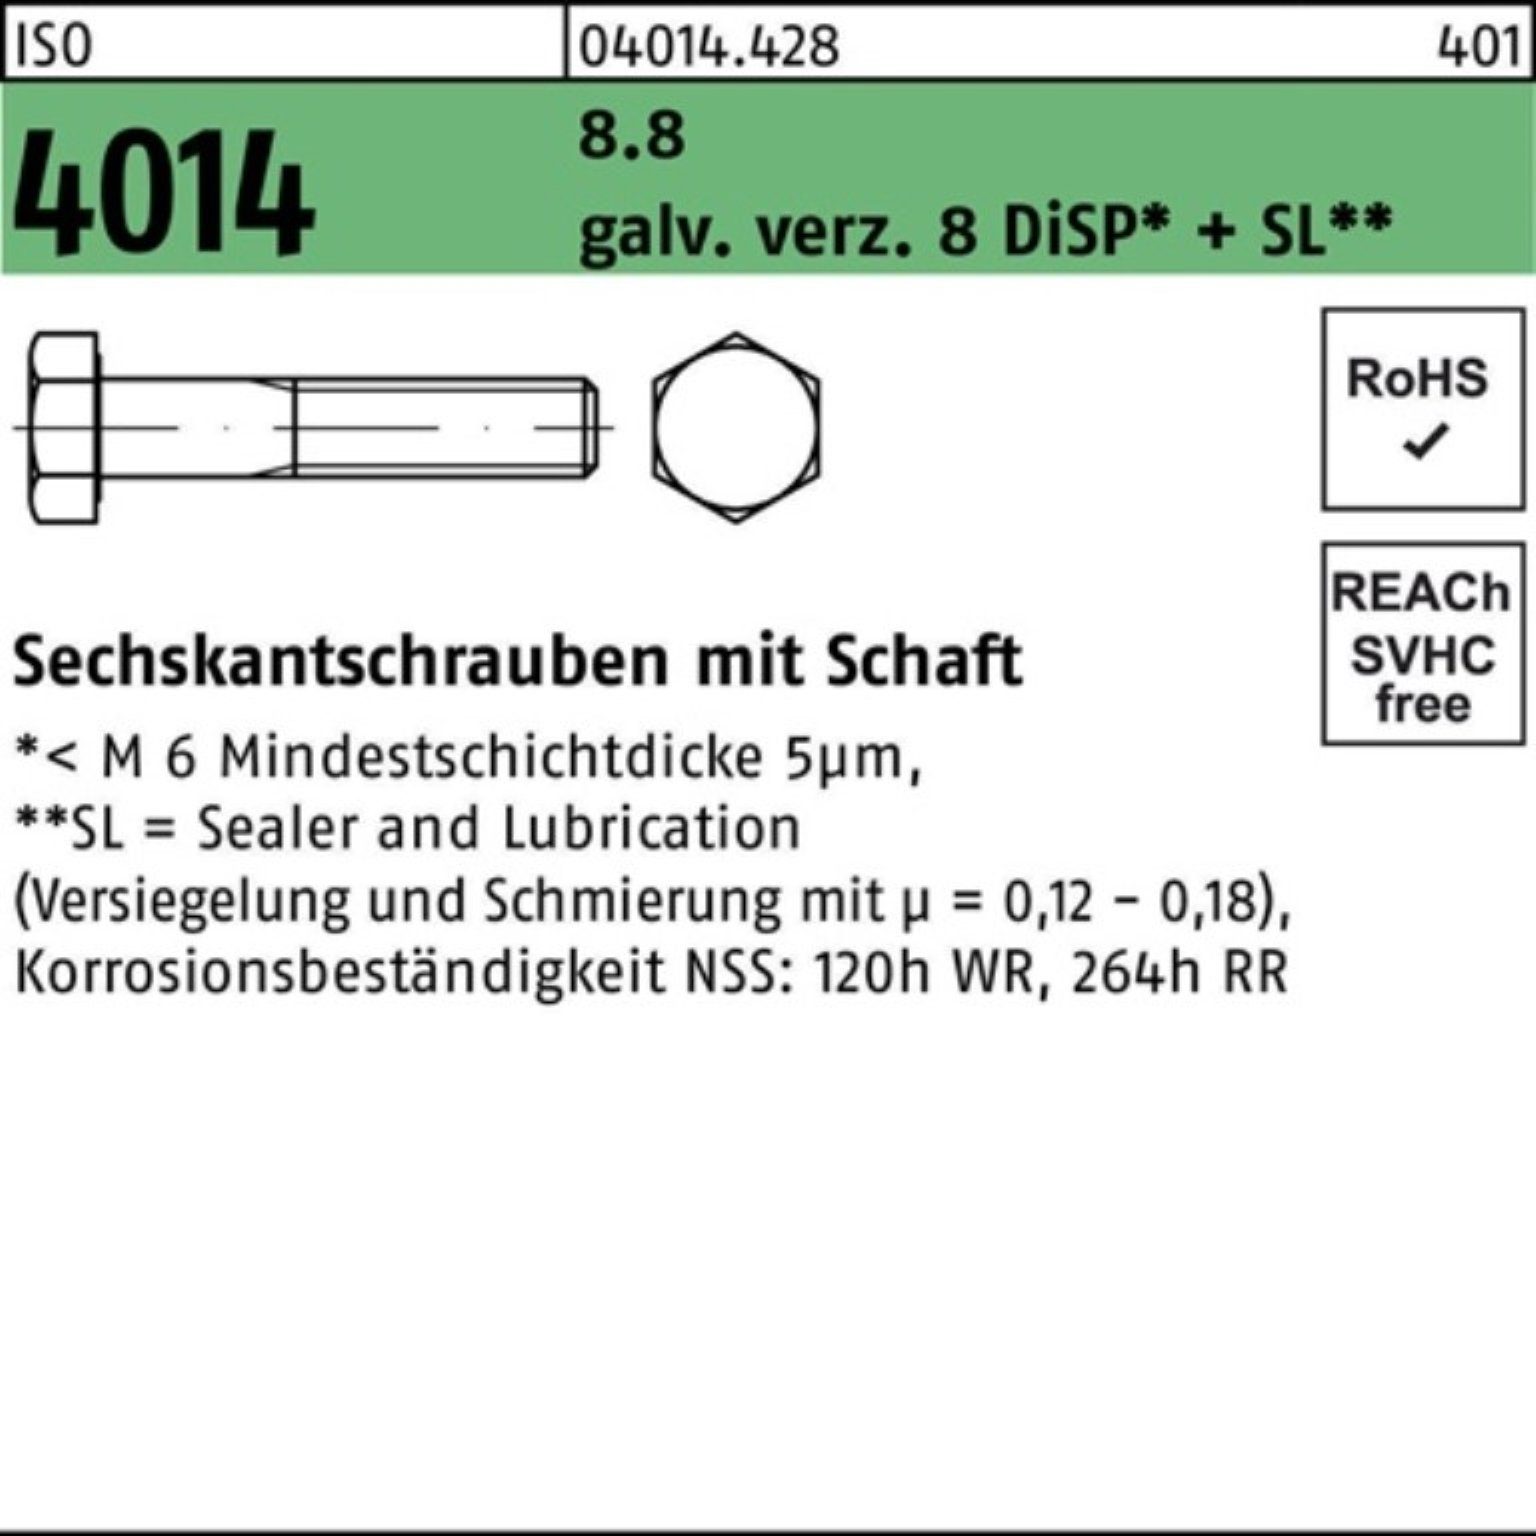 Bufab Sechskantschraube 100er Pack Sechskantschraube ISO 4014 Schaft M24x150 8.8 galv.verz. 8